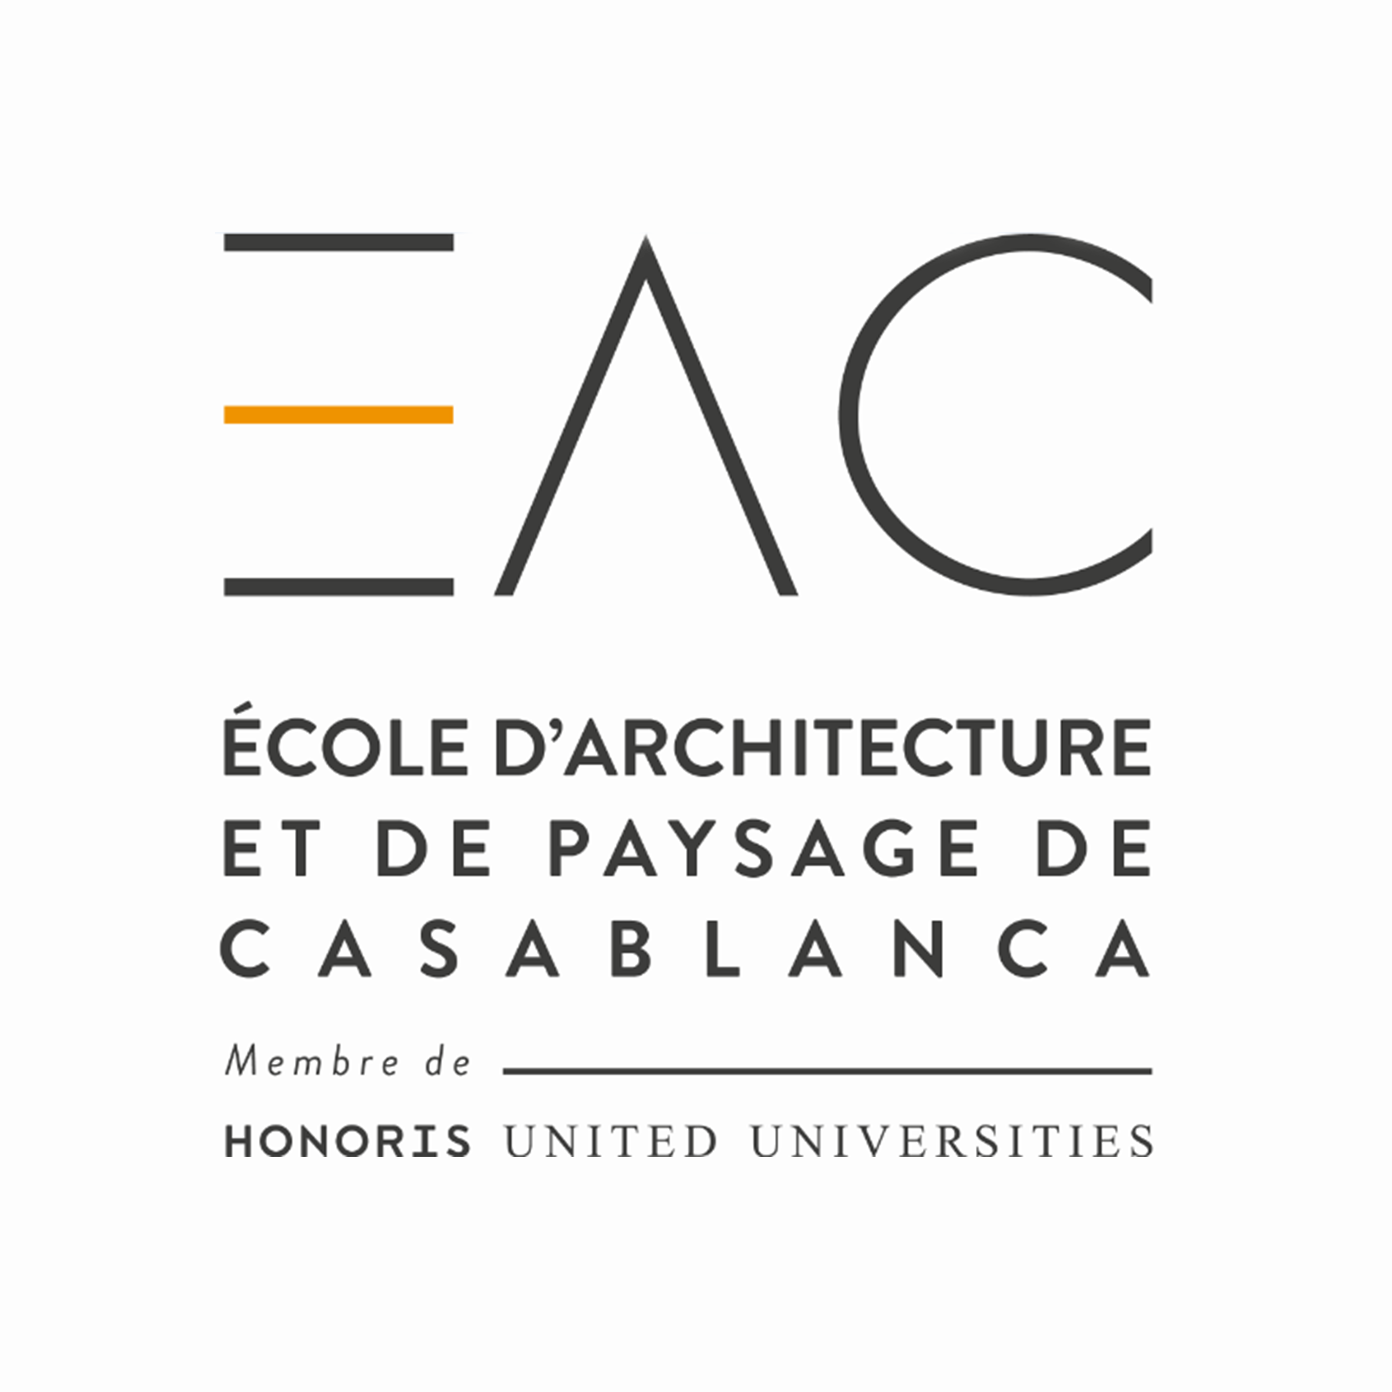 Eac   Ecole D'architecture Et De Paysage De Casablanca